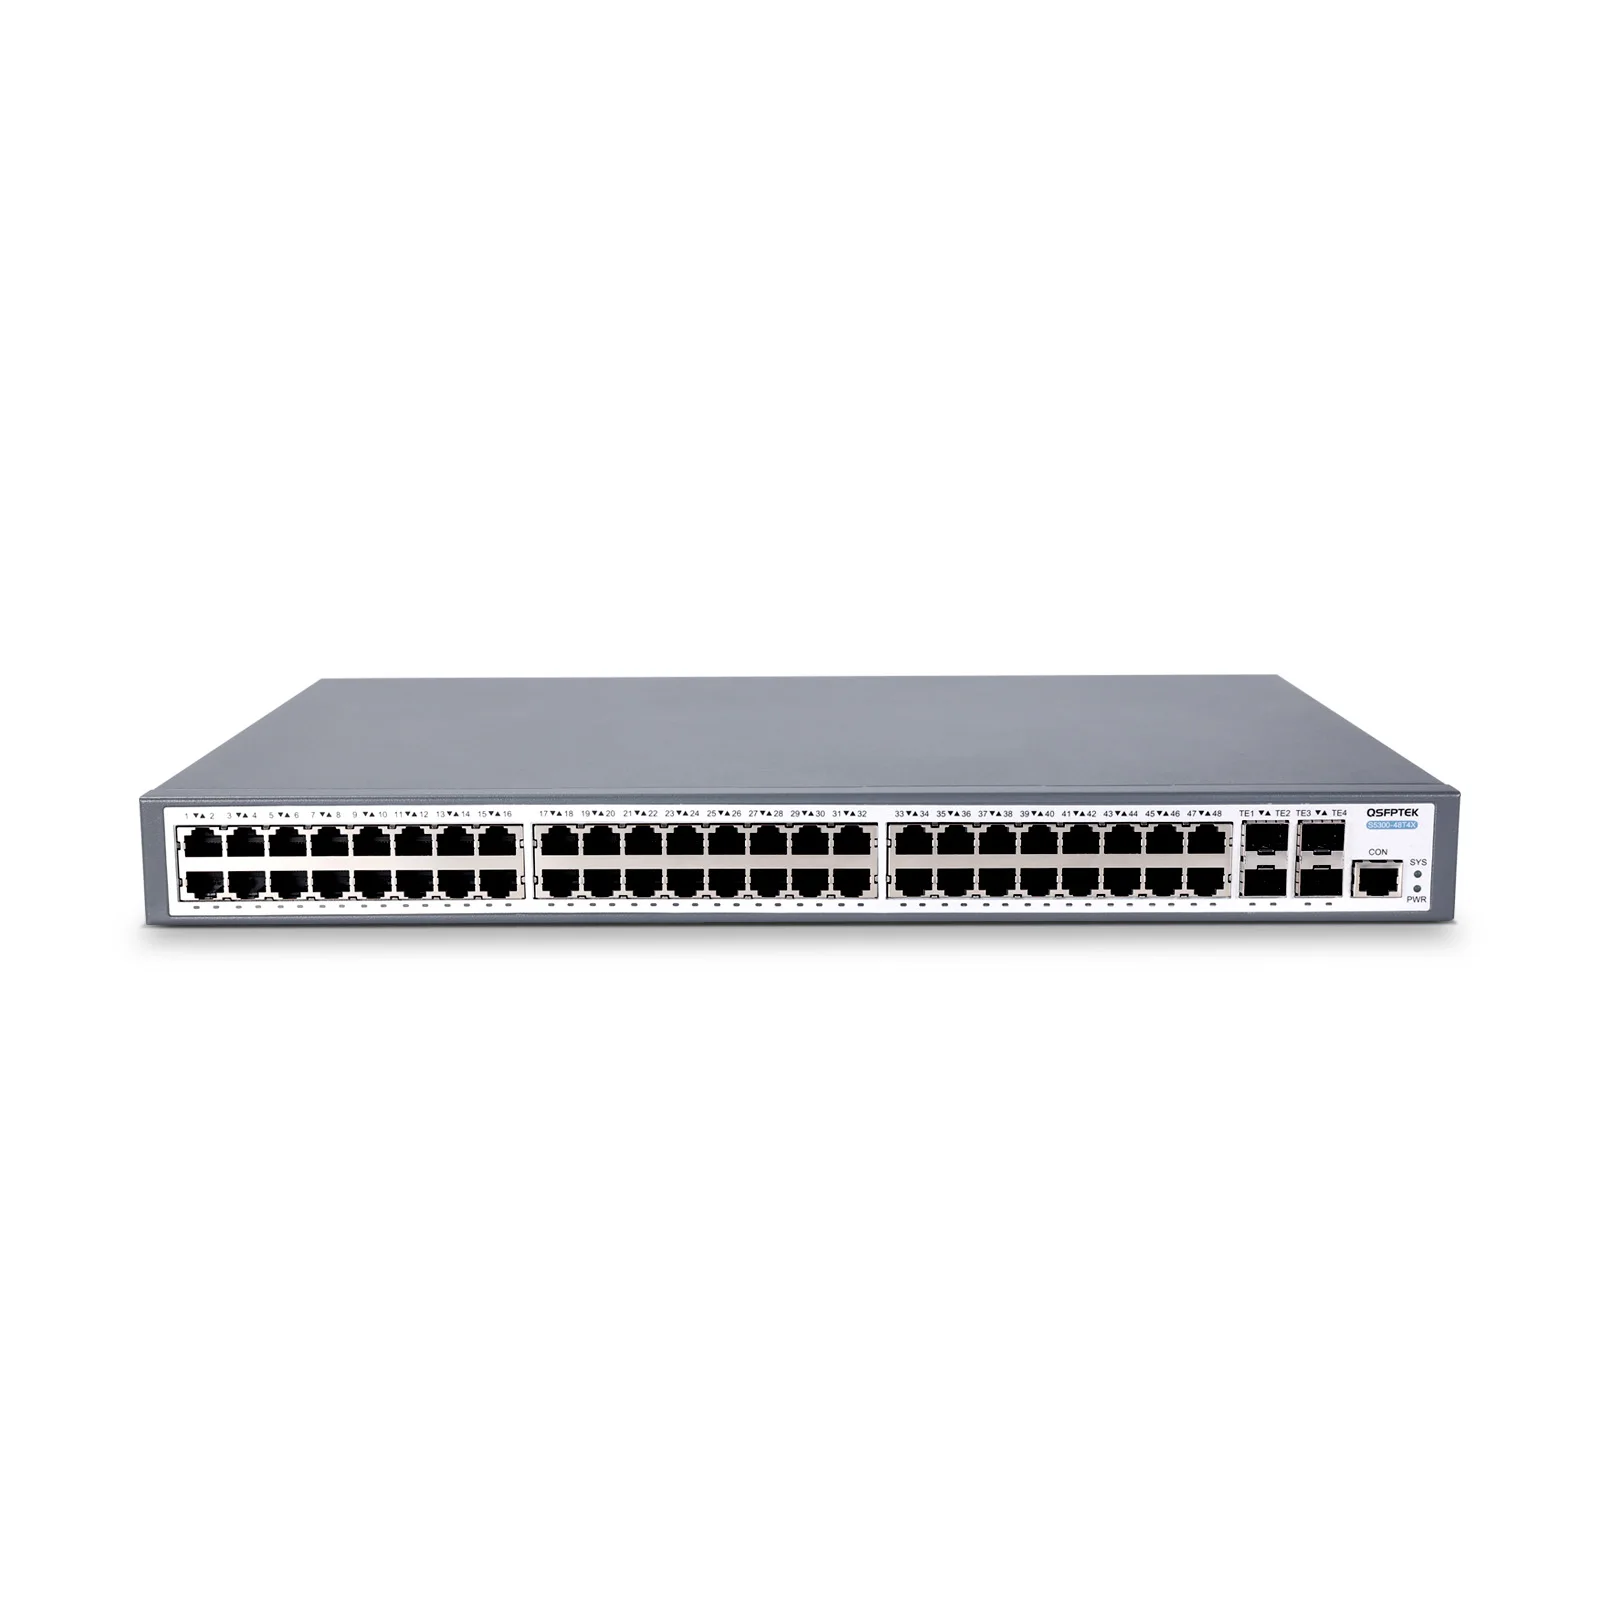 48-Port Gigabit Ethernet L2+ Stackable Switch with 10G Uplinks, S5300-48T4X  - QSFPTEK